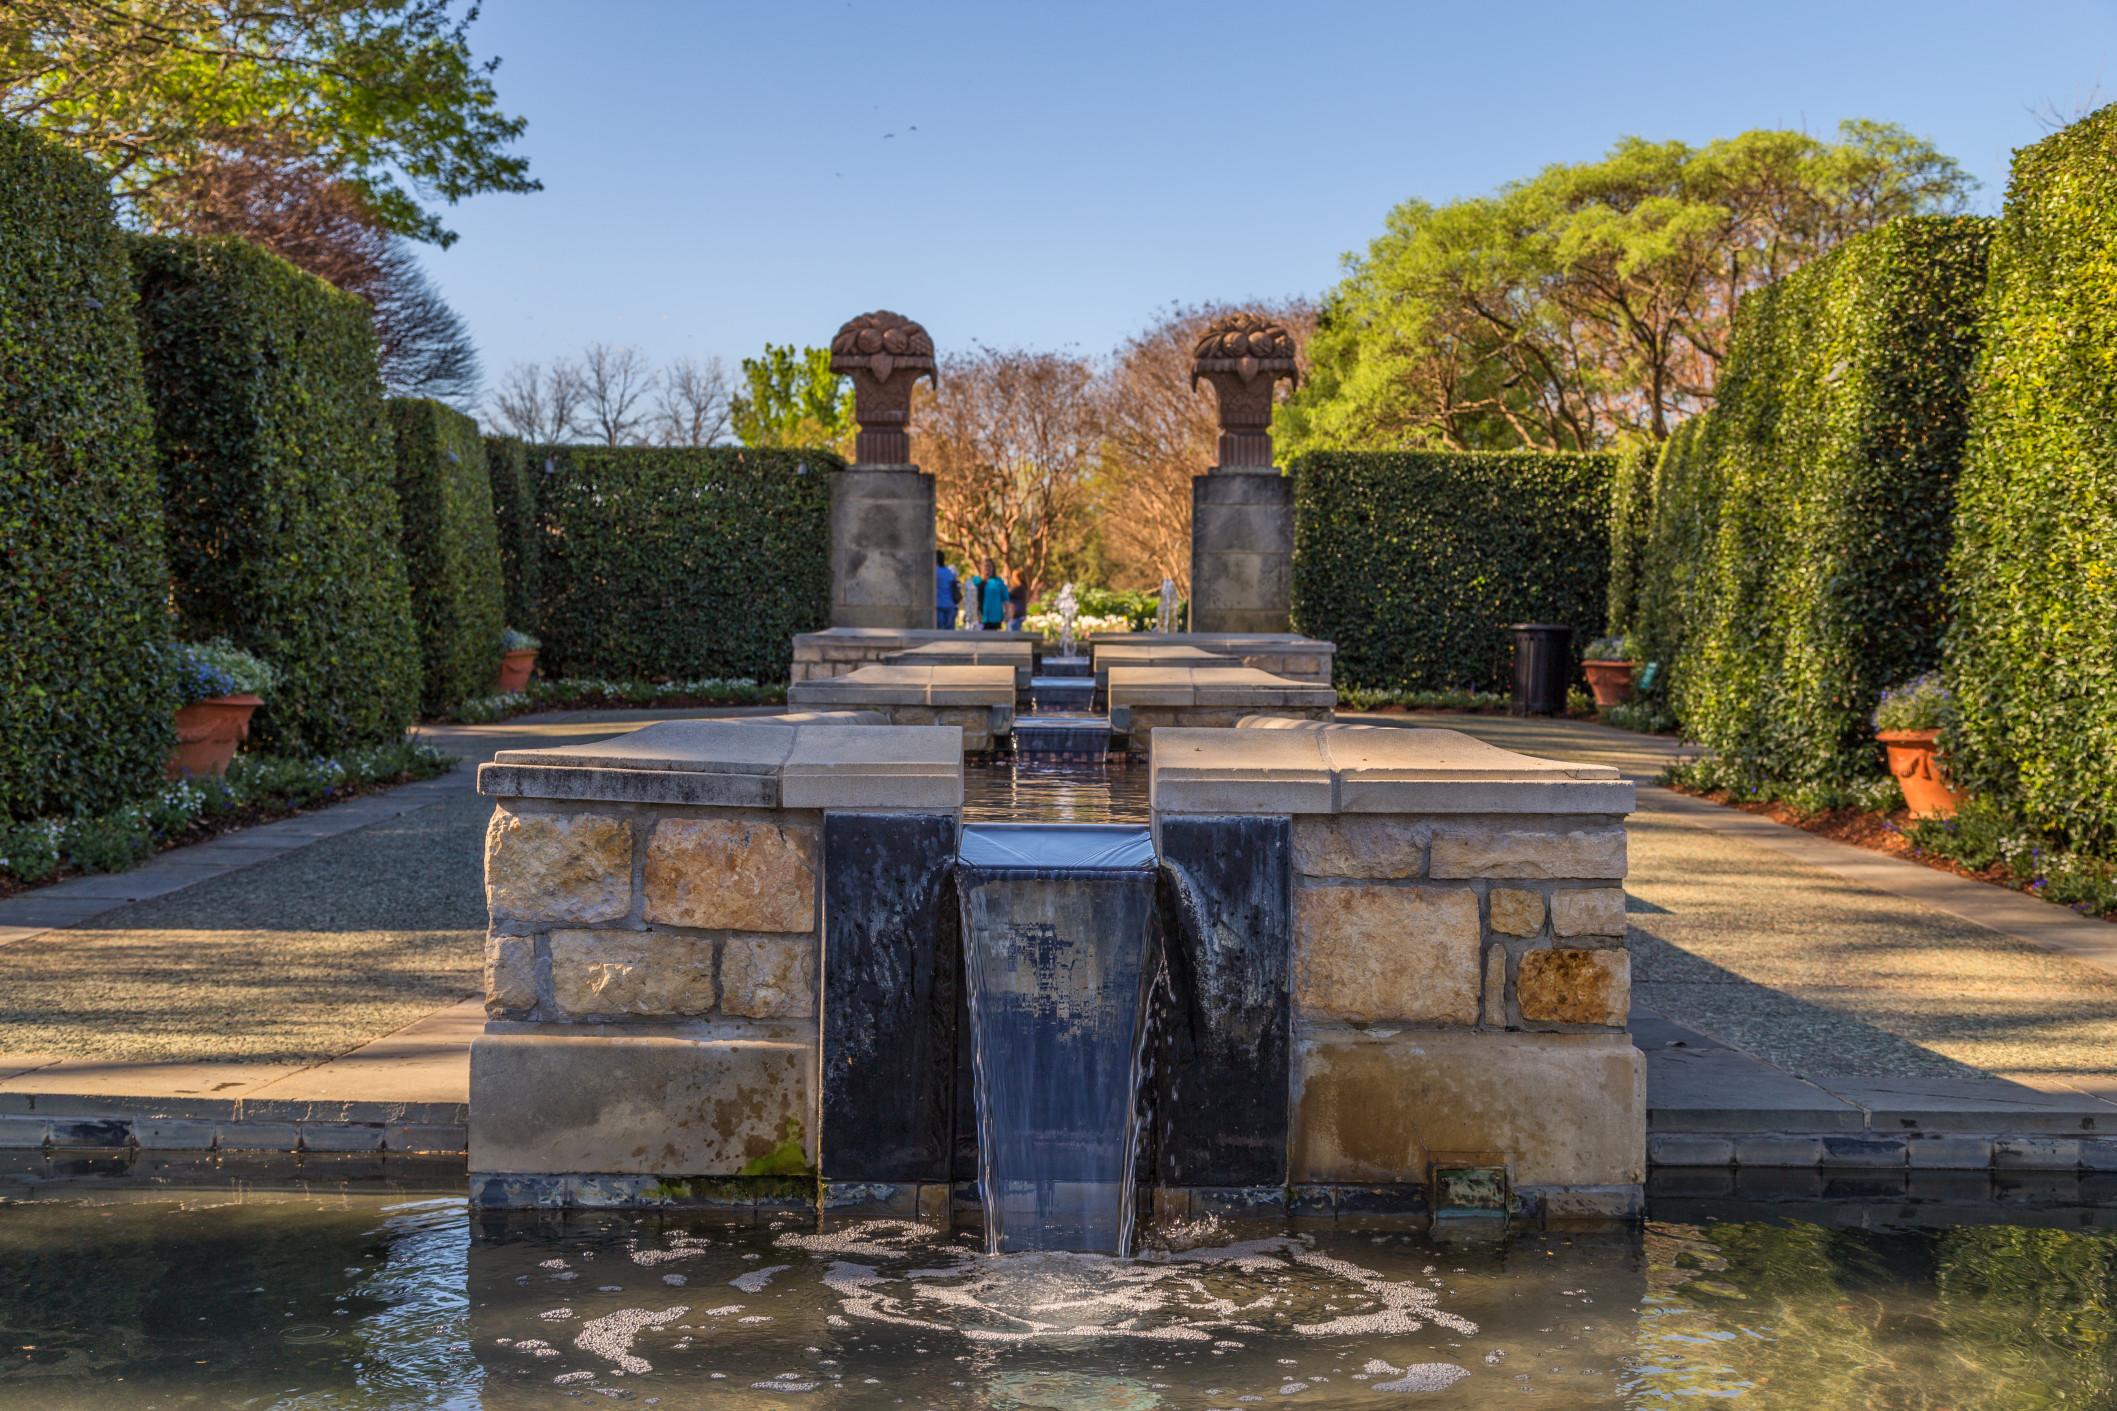 The Dallas Arboretum and Botanical Garden